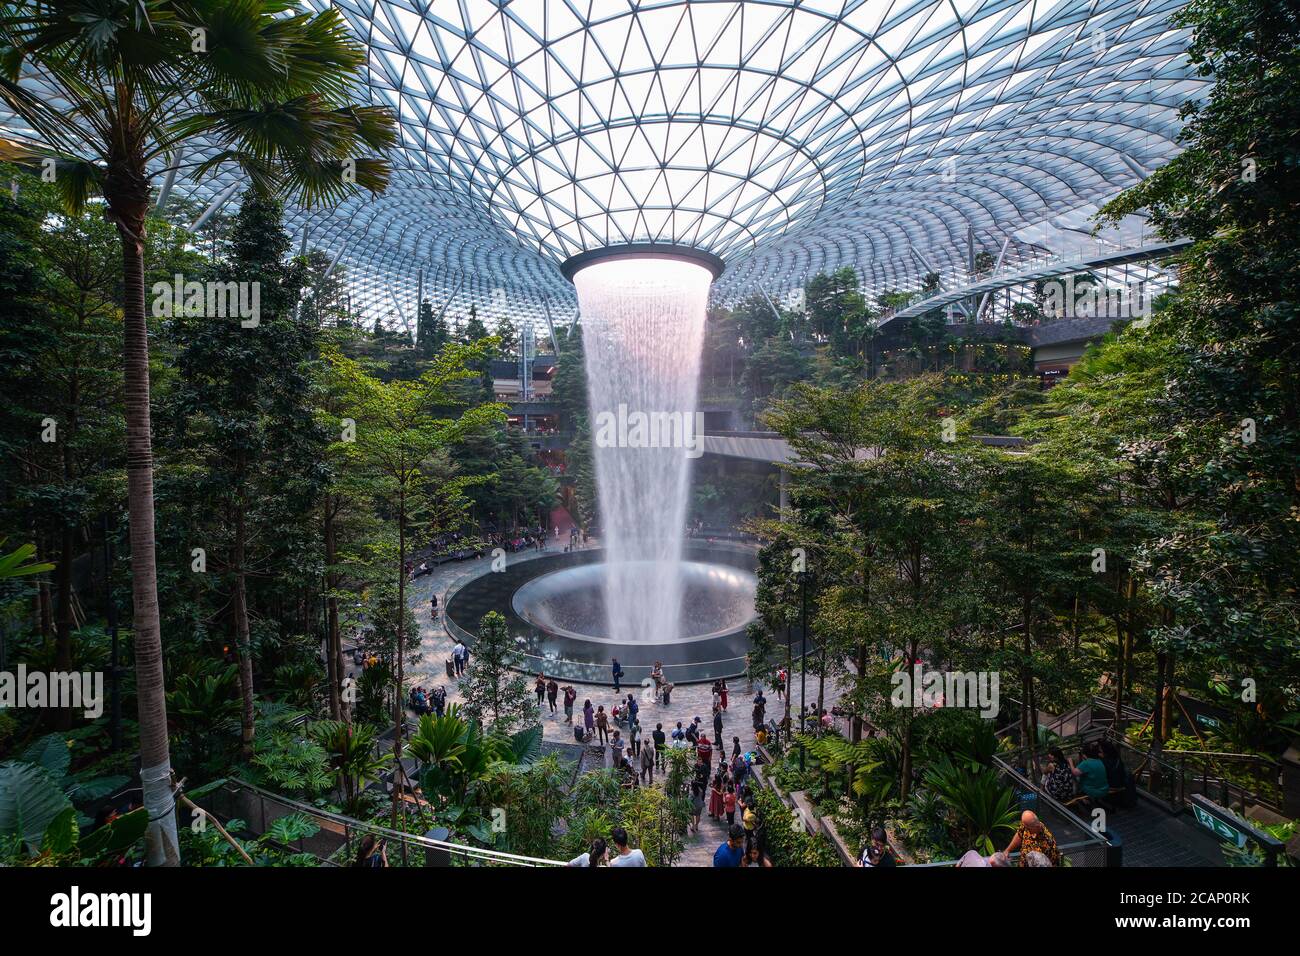 Der Rain Vortex, ein 40 m hoher Indoor-Wasserfall im Jewel Changi Airport in Singapur. Der Flughafen Jewel Changi wird am 17. April 20 eröffnet Stockfoto